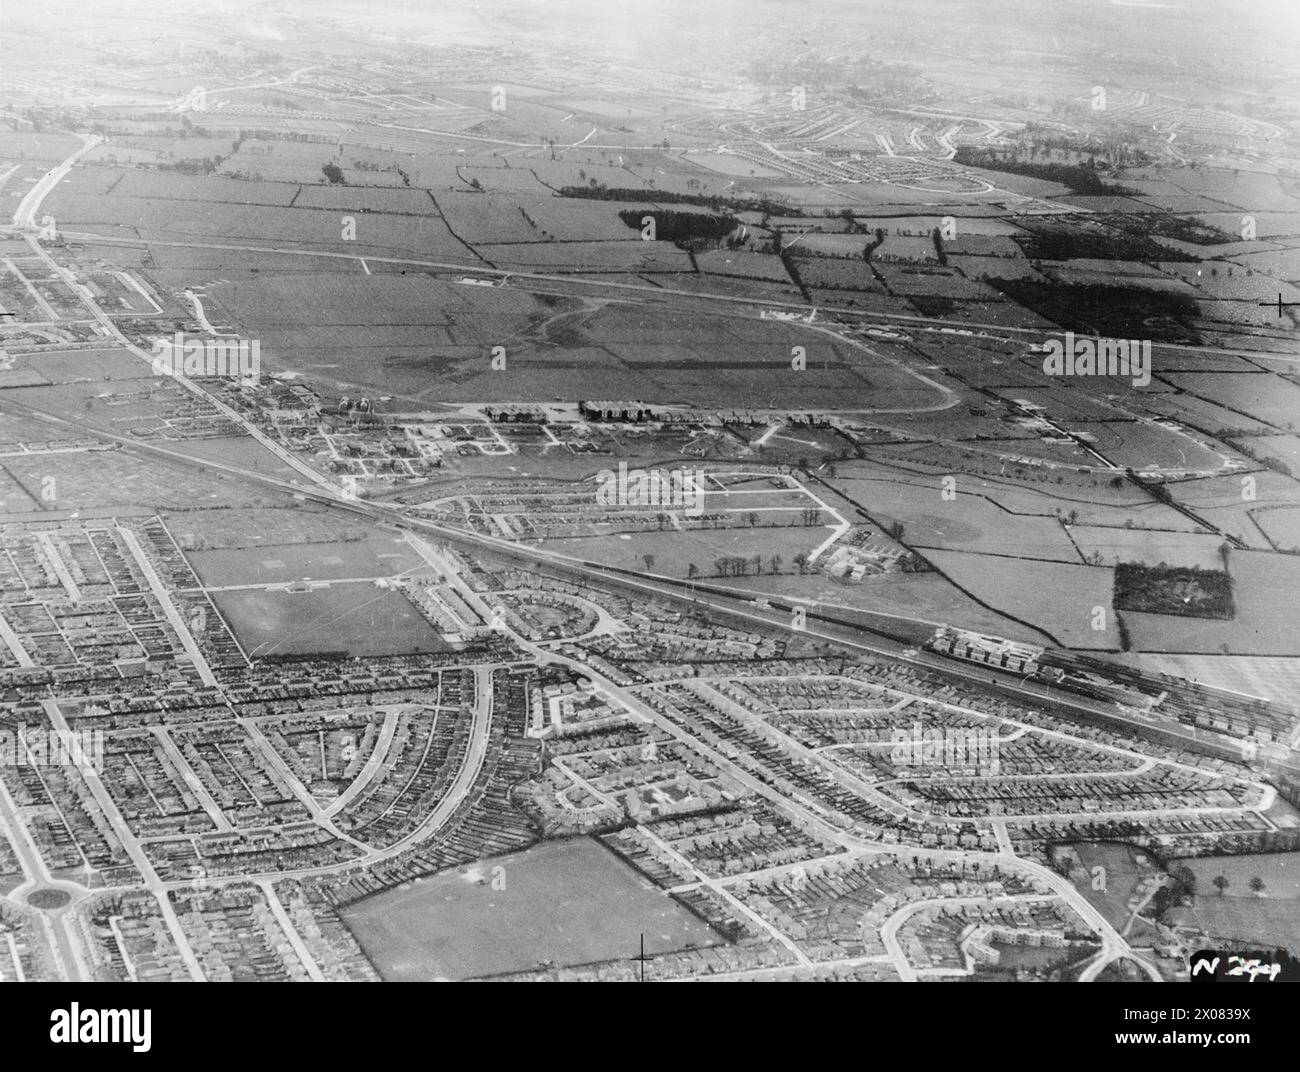 LUFTAUFNAHMEN IM VEREINIGTEN KÖNIGREICH, 1941 - 1942 - RAF Northolt, Middlesex, aus dem Norden. Ruislip Manor und Ruislip Gardens befinden sich im Vordergrund Stockfoto